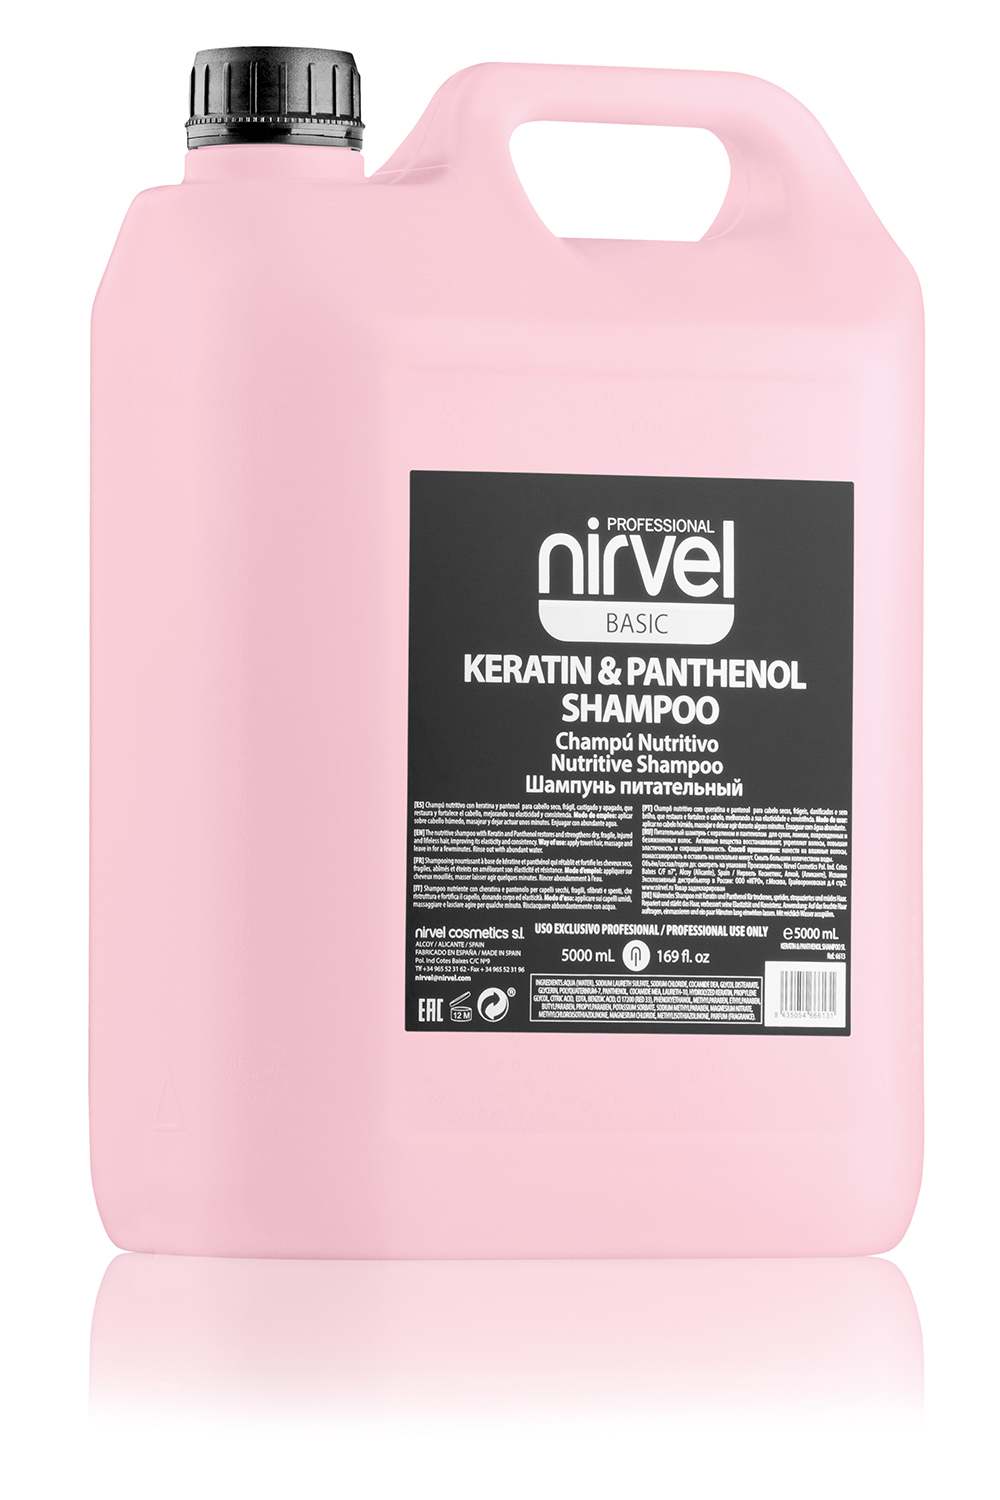 NIRVEL PROFESSIONAL Шампунь питательный с кератином и пантенолом для сухих, ломких и поврежденных волос / KERATIN & PANTHENOL SHAMPOO 5000 мл